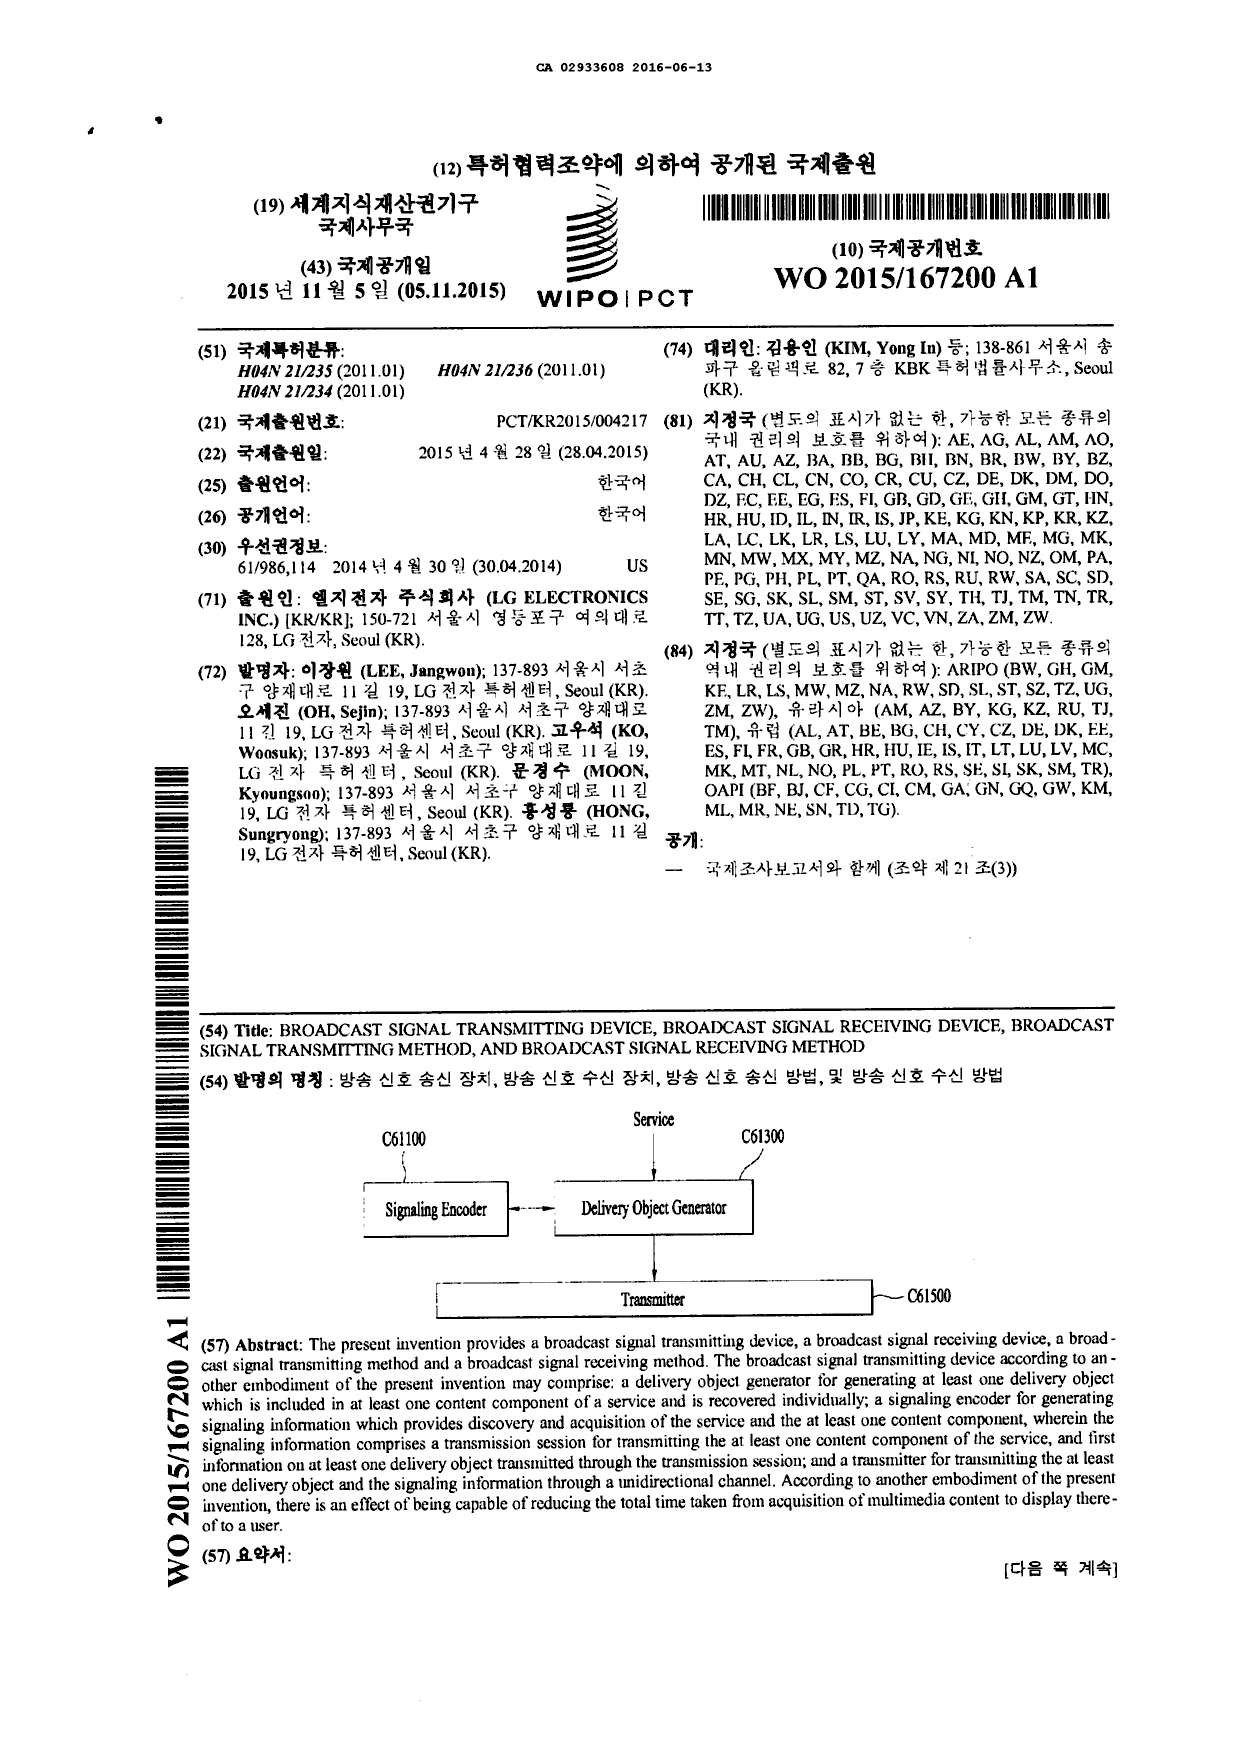 Document de brevet canadien 2933608. Traité de coopération en matière de brevets (PCT) 20160613. Image 1 de 2